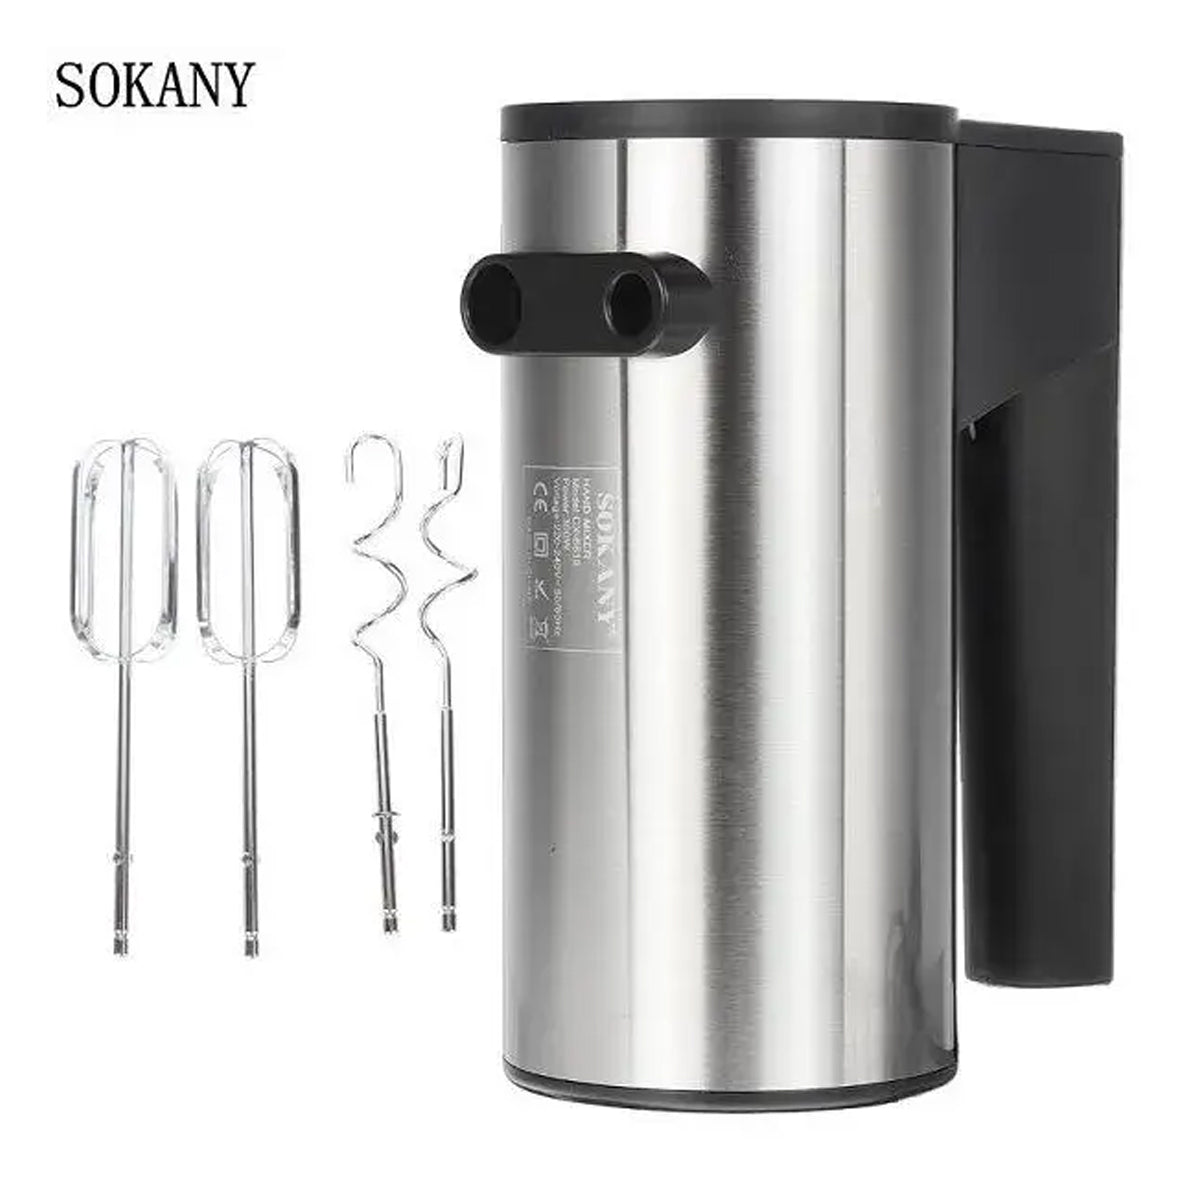 Sokany SK-6638 Hand Mixer/Beater 300w